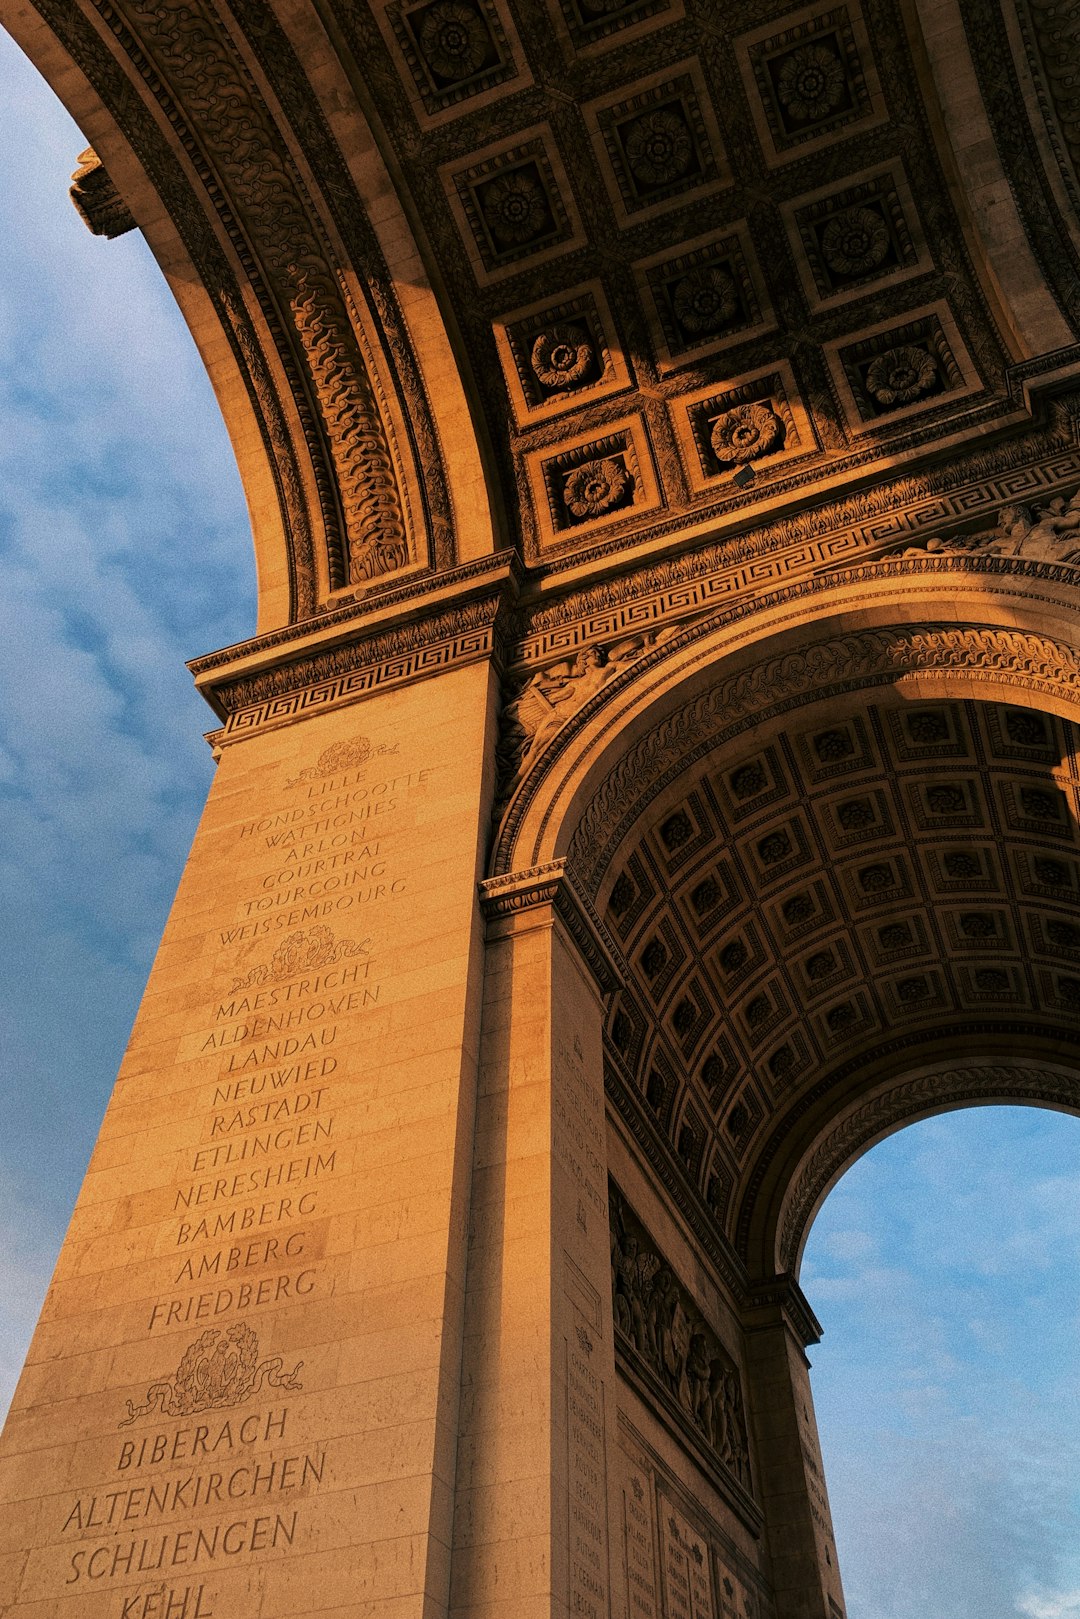 Landmark photo spot Charles de Gaulle – Étoile Grande Arche de la Defense